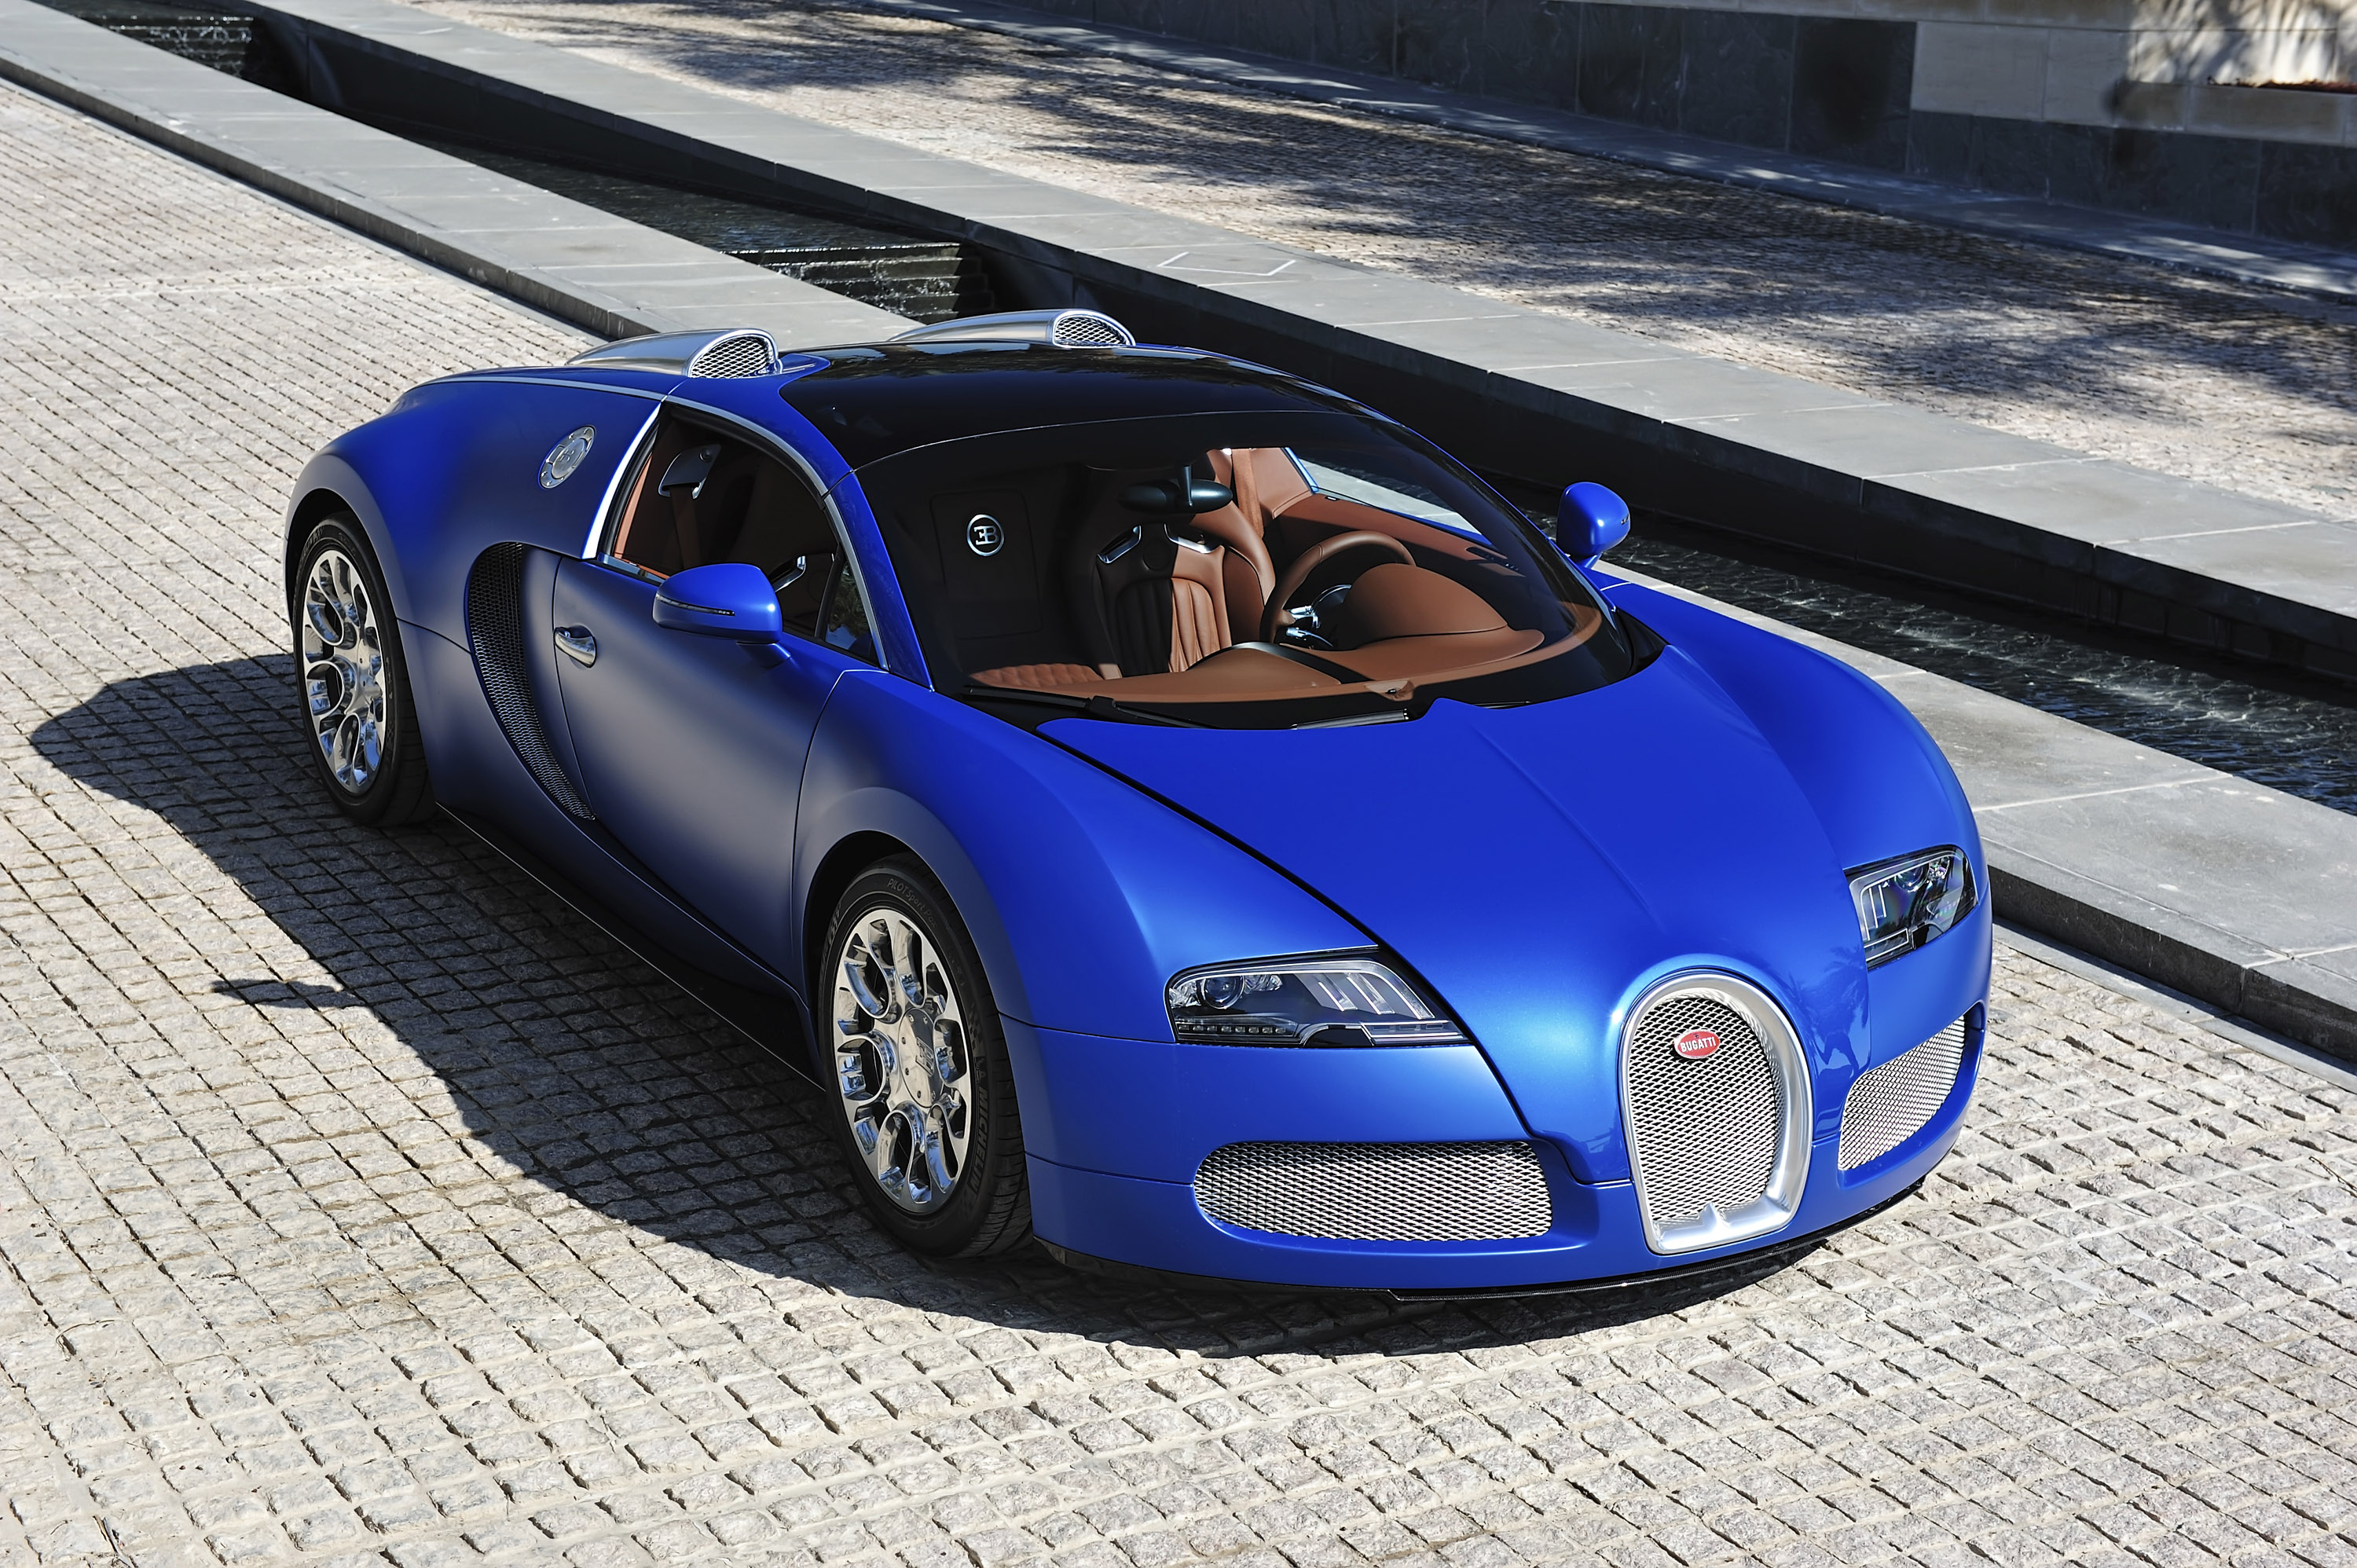 Bugatti pro 1. Bugatti Veyron 16.4. Bugatti Veyron 16.4 Grand Sport. Bugatti Veyron Grand Sport 2010. Bugatti Veyron 16.4 Grand Sport Vitesse.